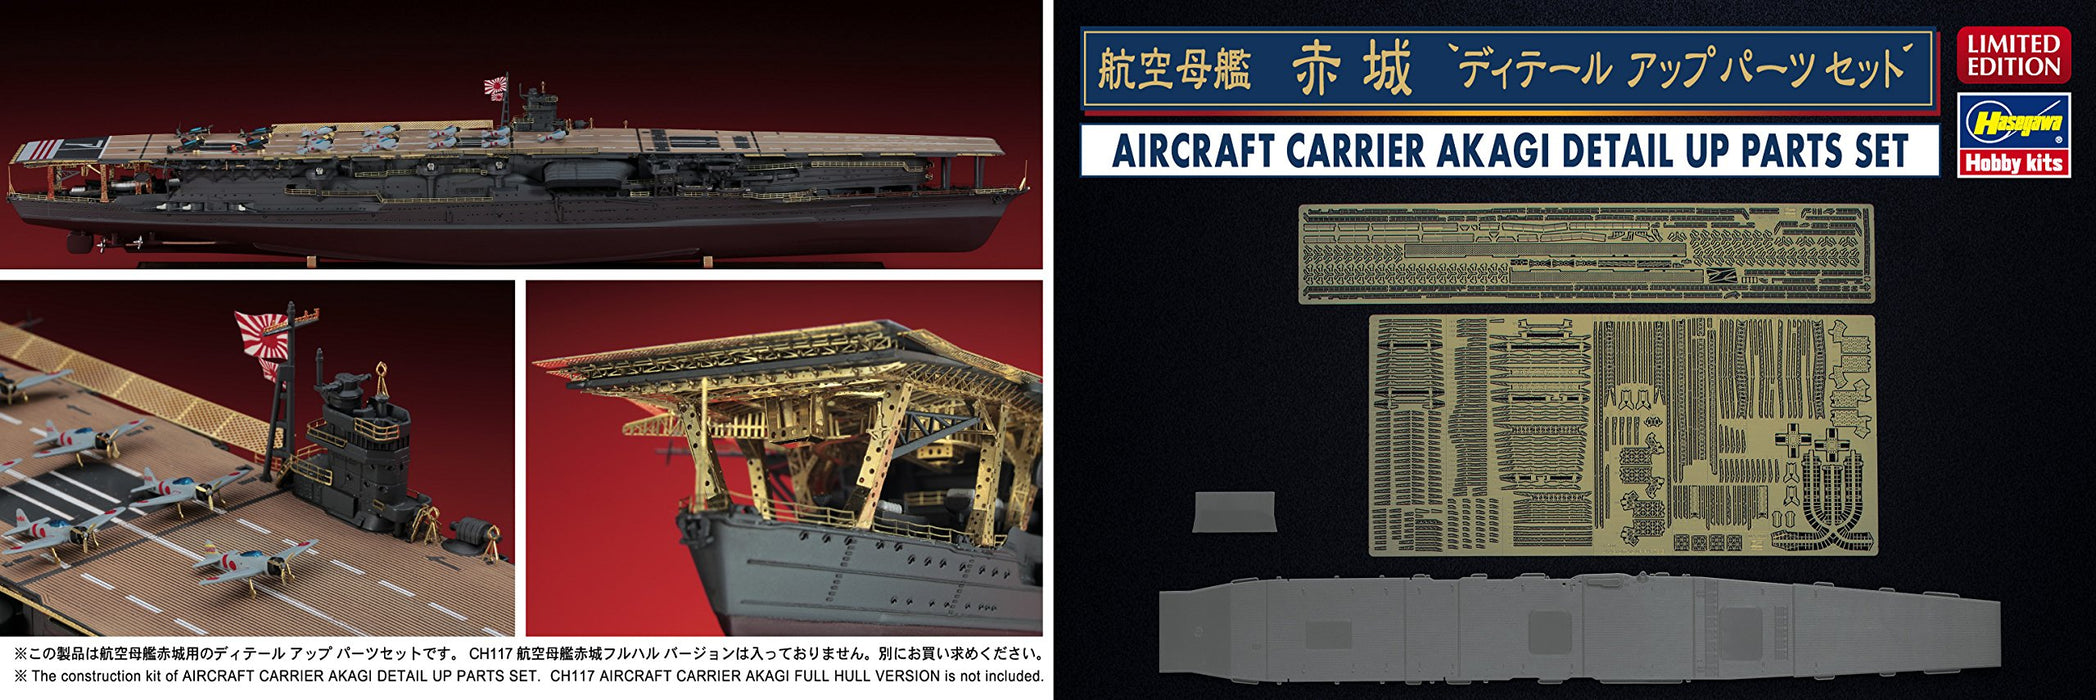 Hasegawa 30036 1/700 porte-avions de la marine japonaise Akagi détail pièces ensemble pièces de modèle en plastique